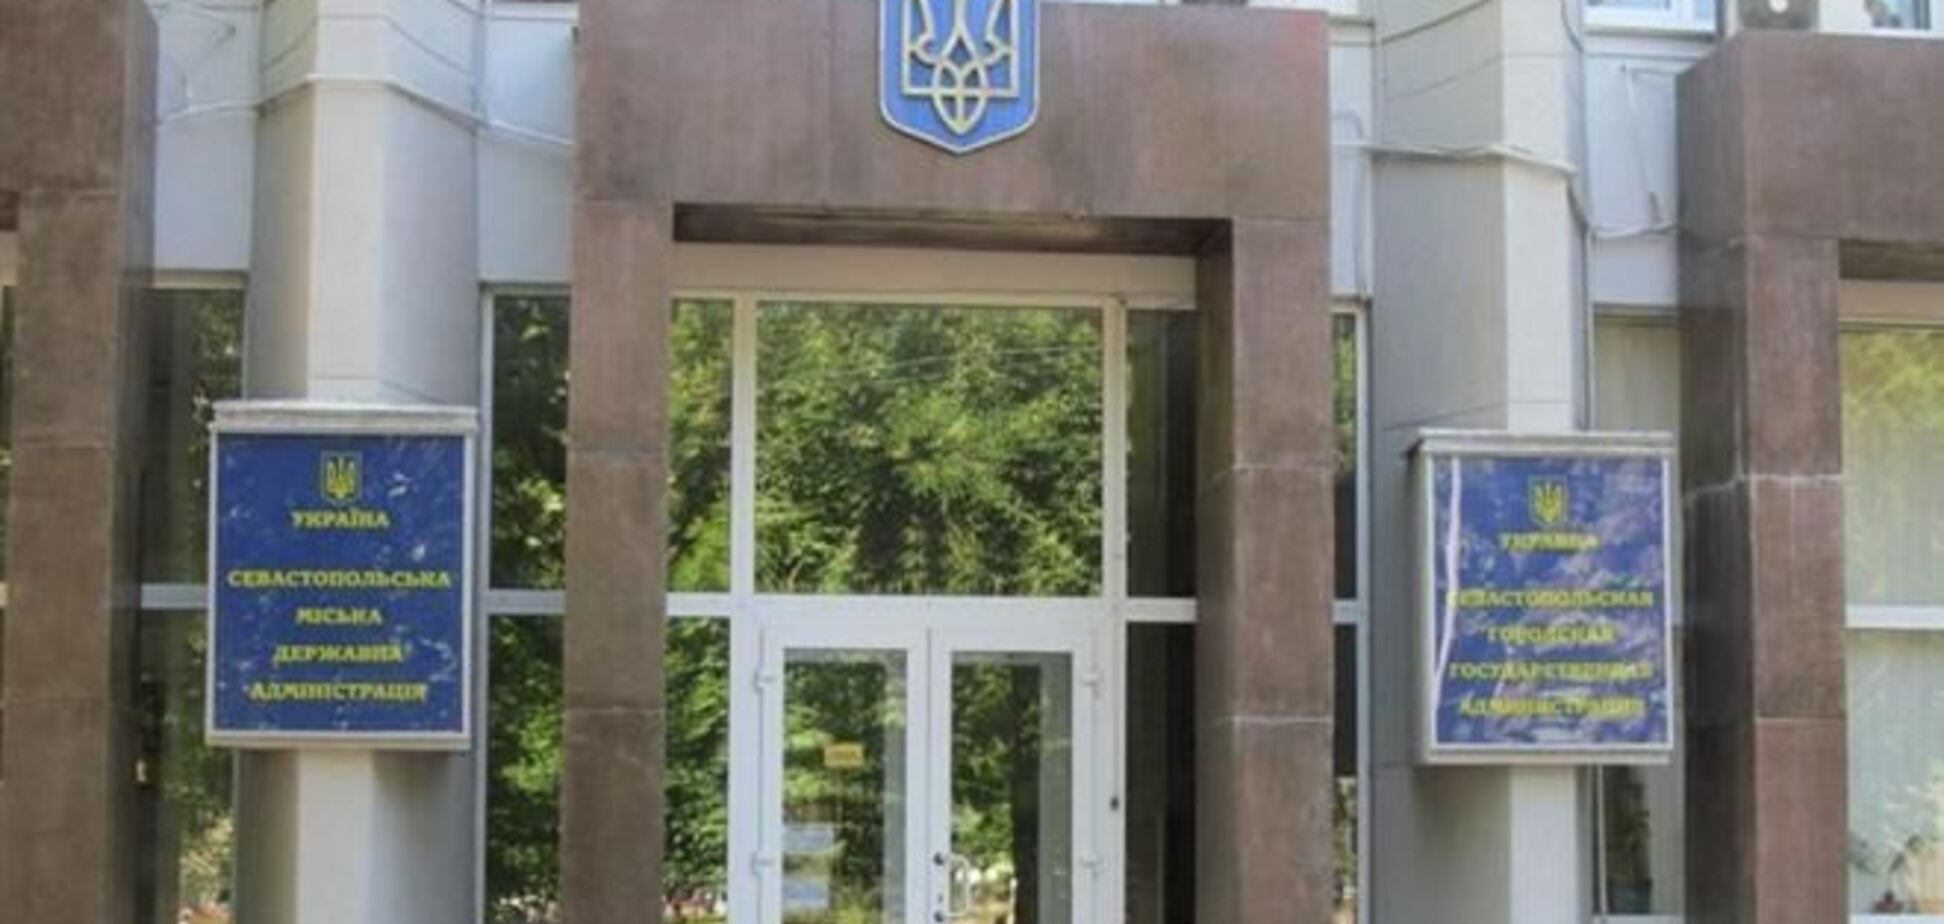 Службовці Севастопольської міськадміністрації звільняються